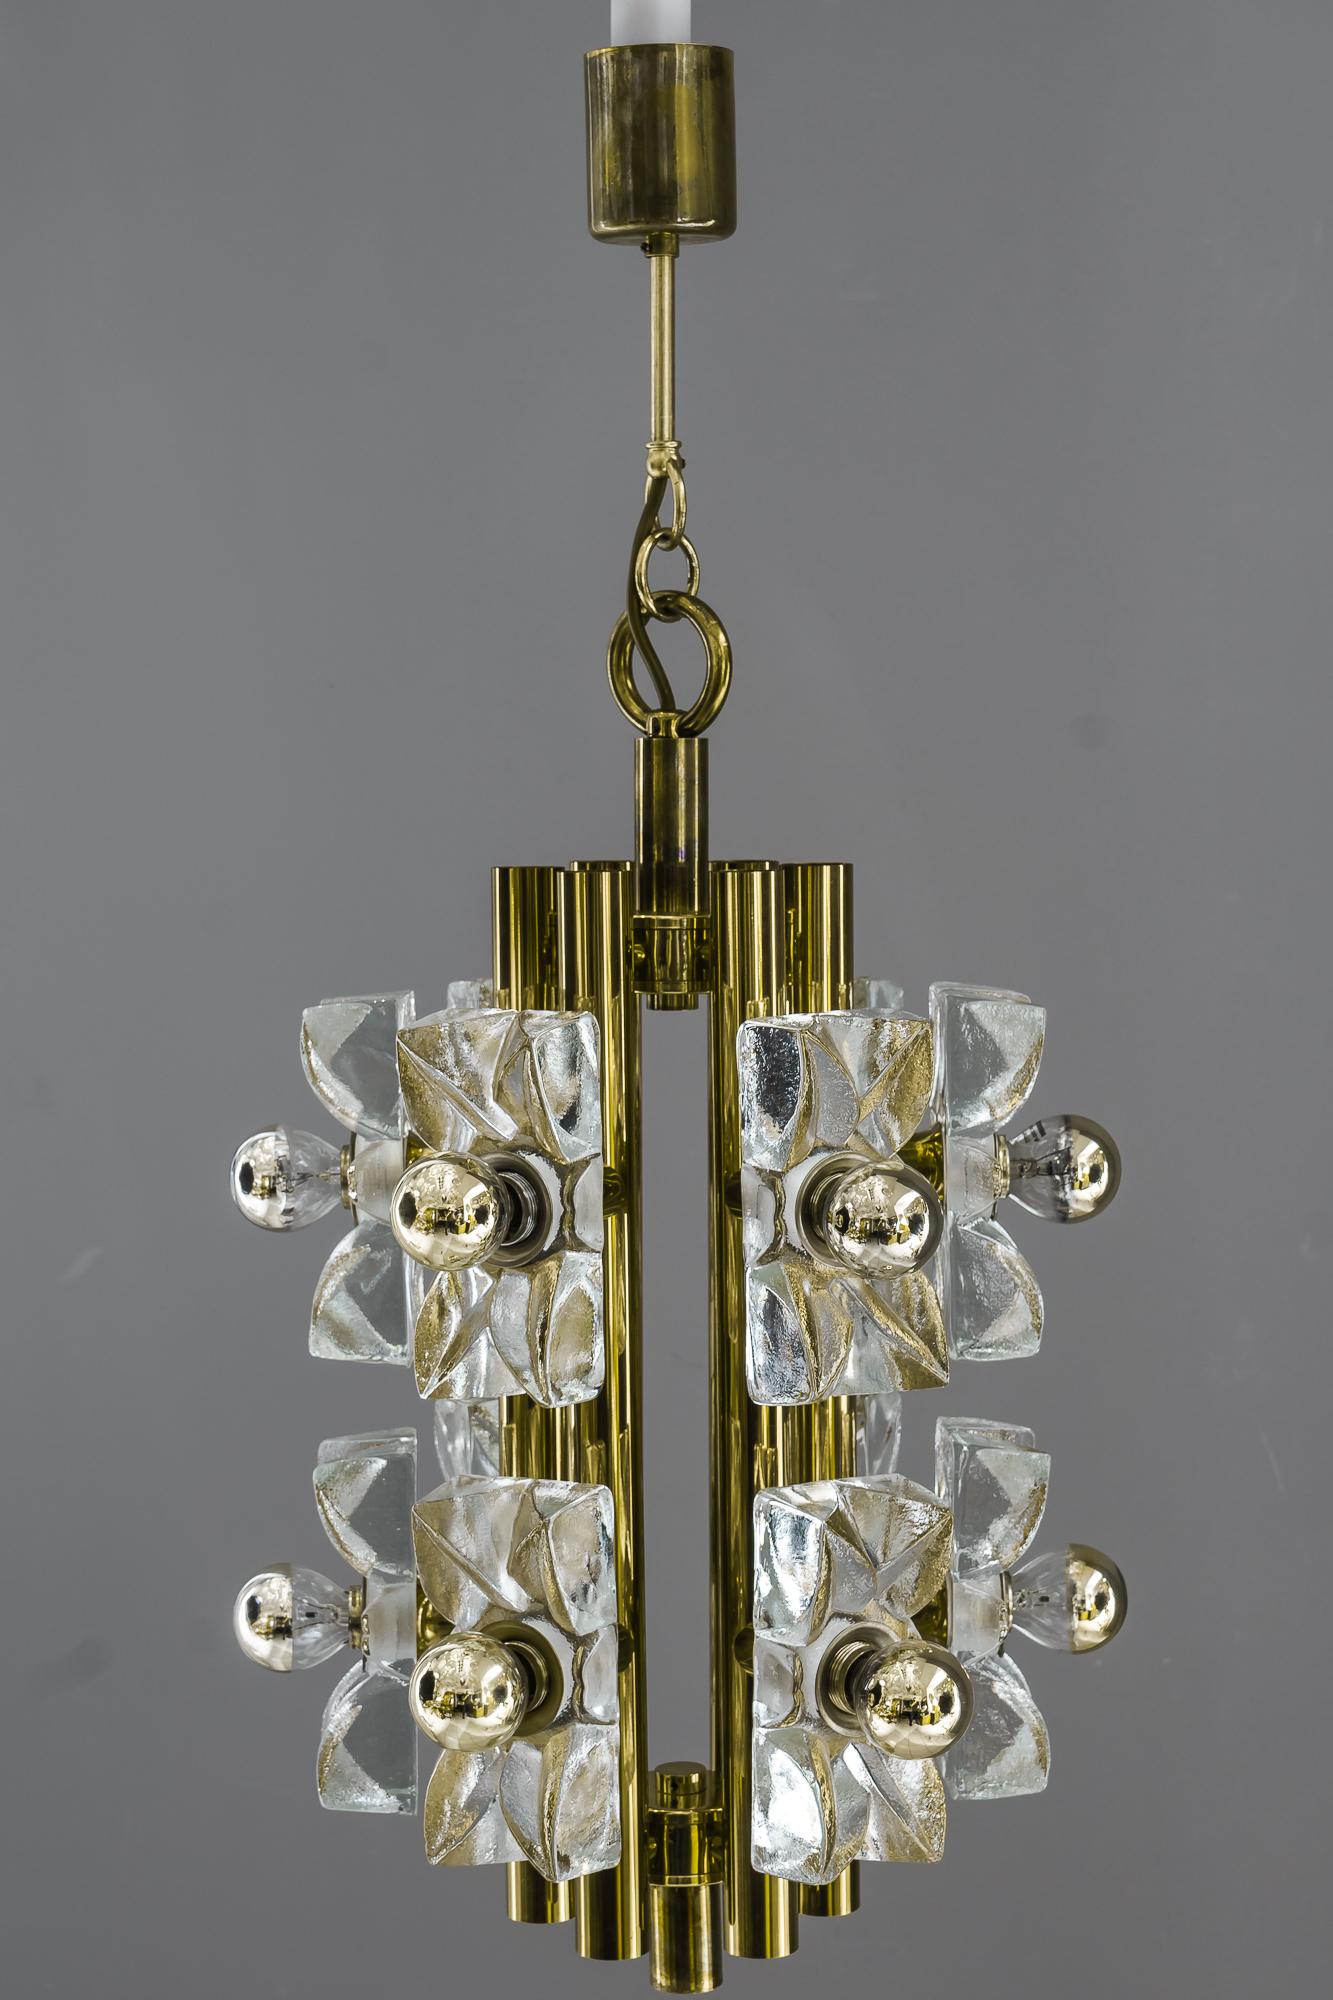 Sische glass and brass chandelier, Vienna, circa 1960s.
Original condition
Brass and glass.
  